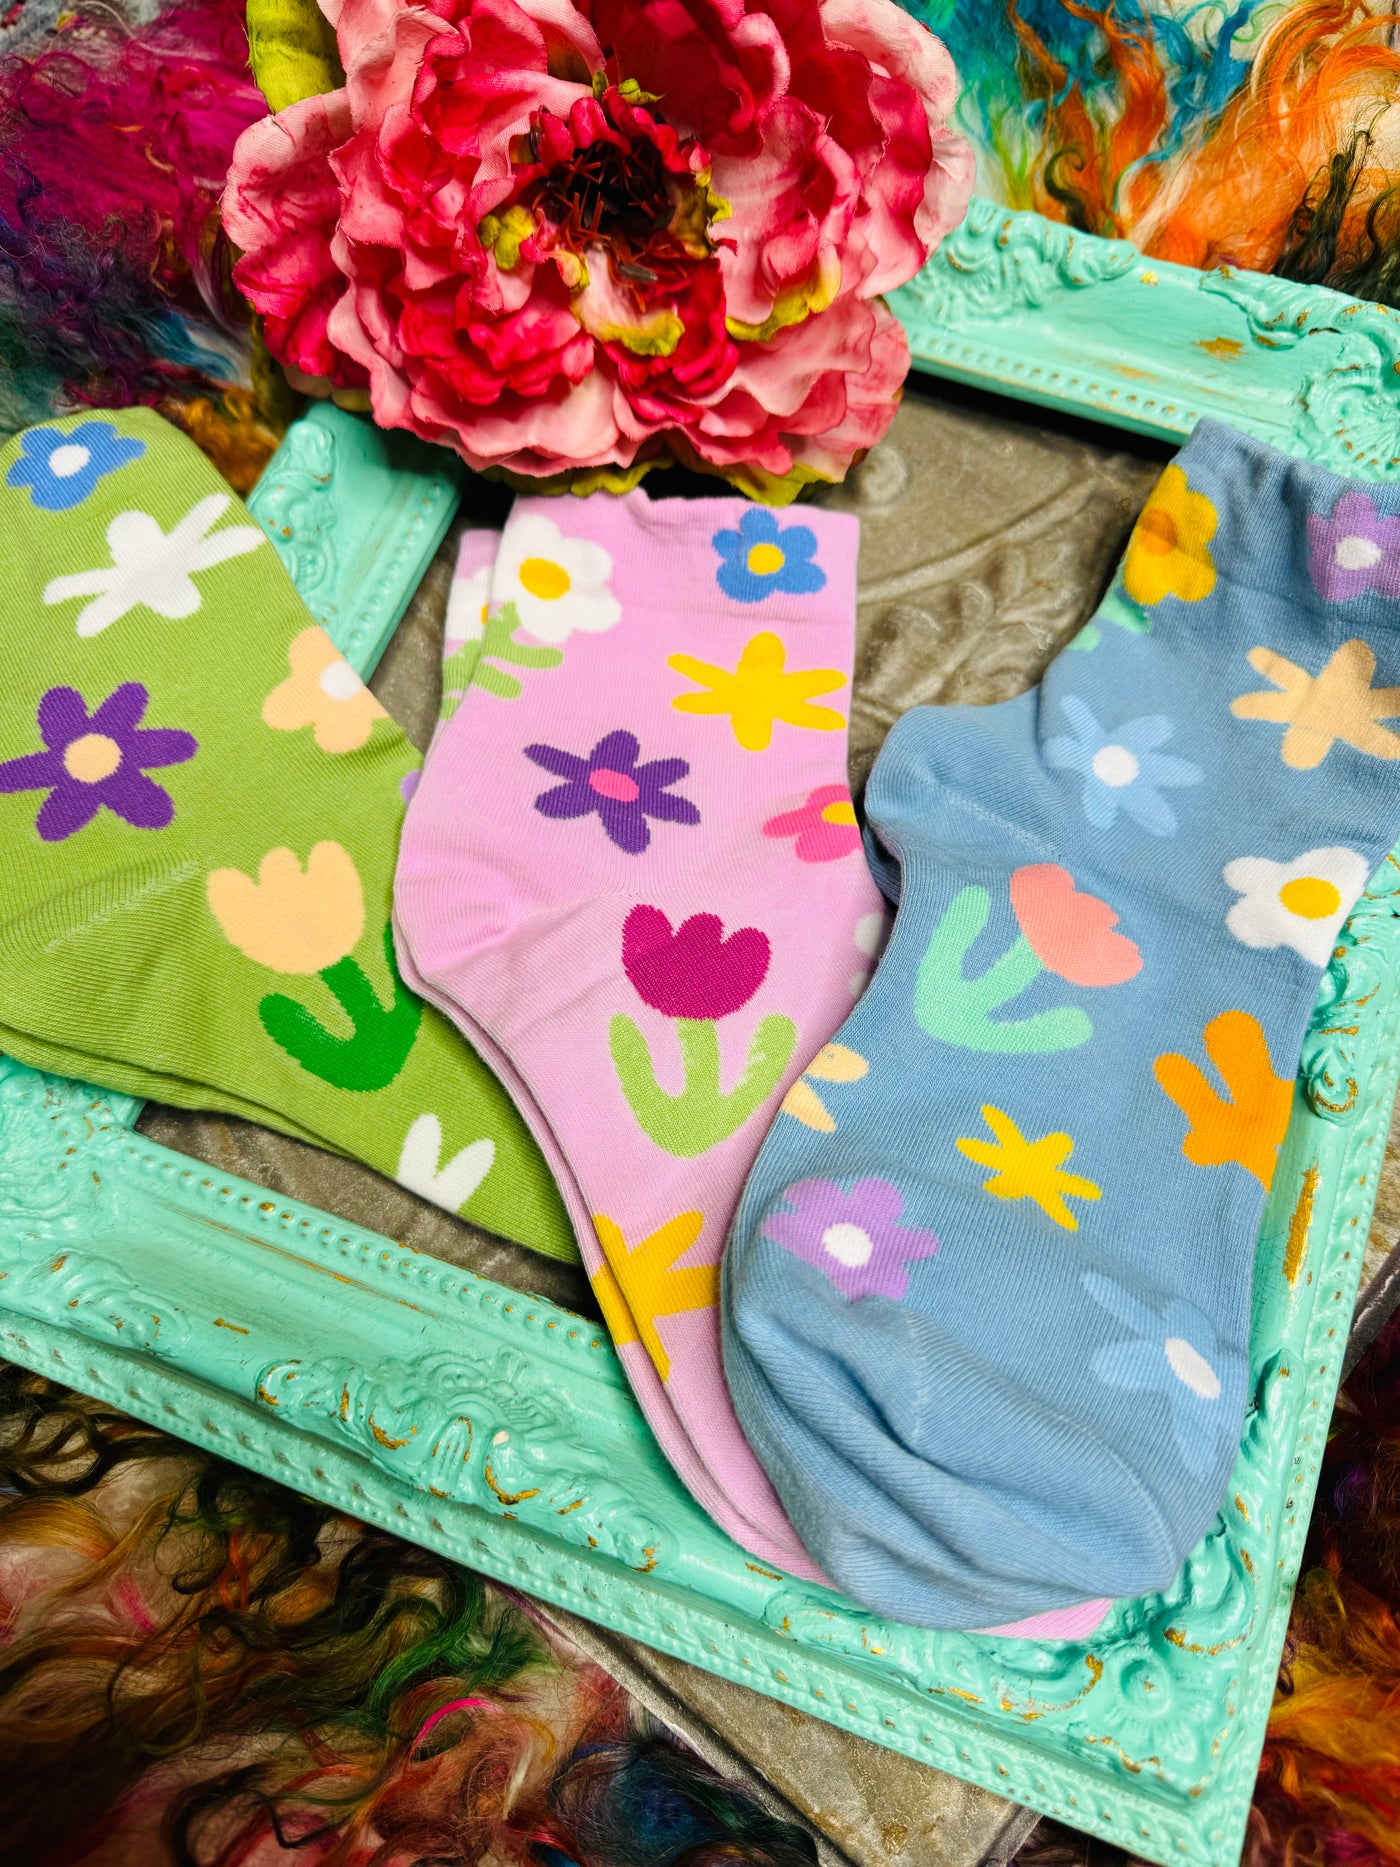 Sage Floral Socks